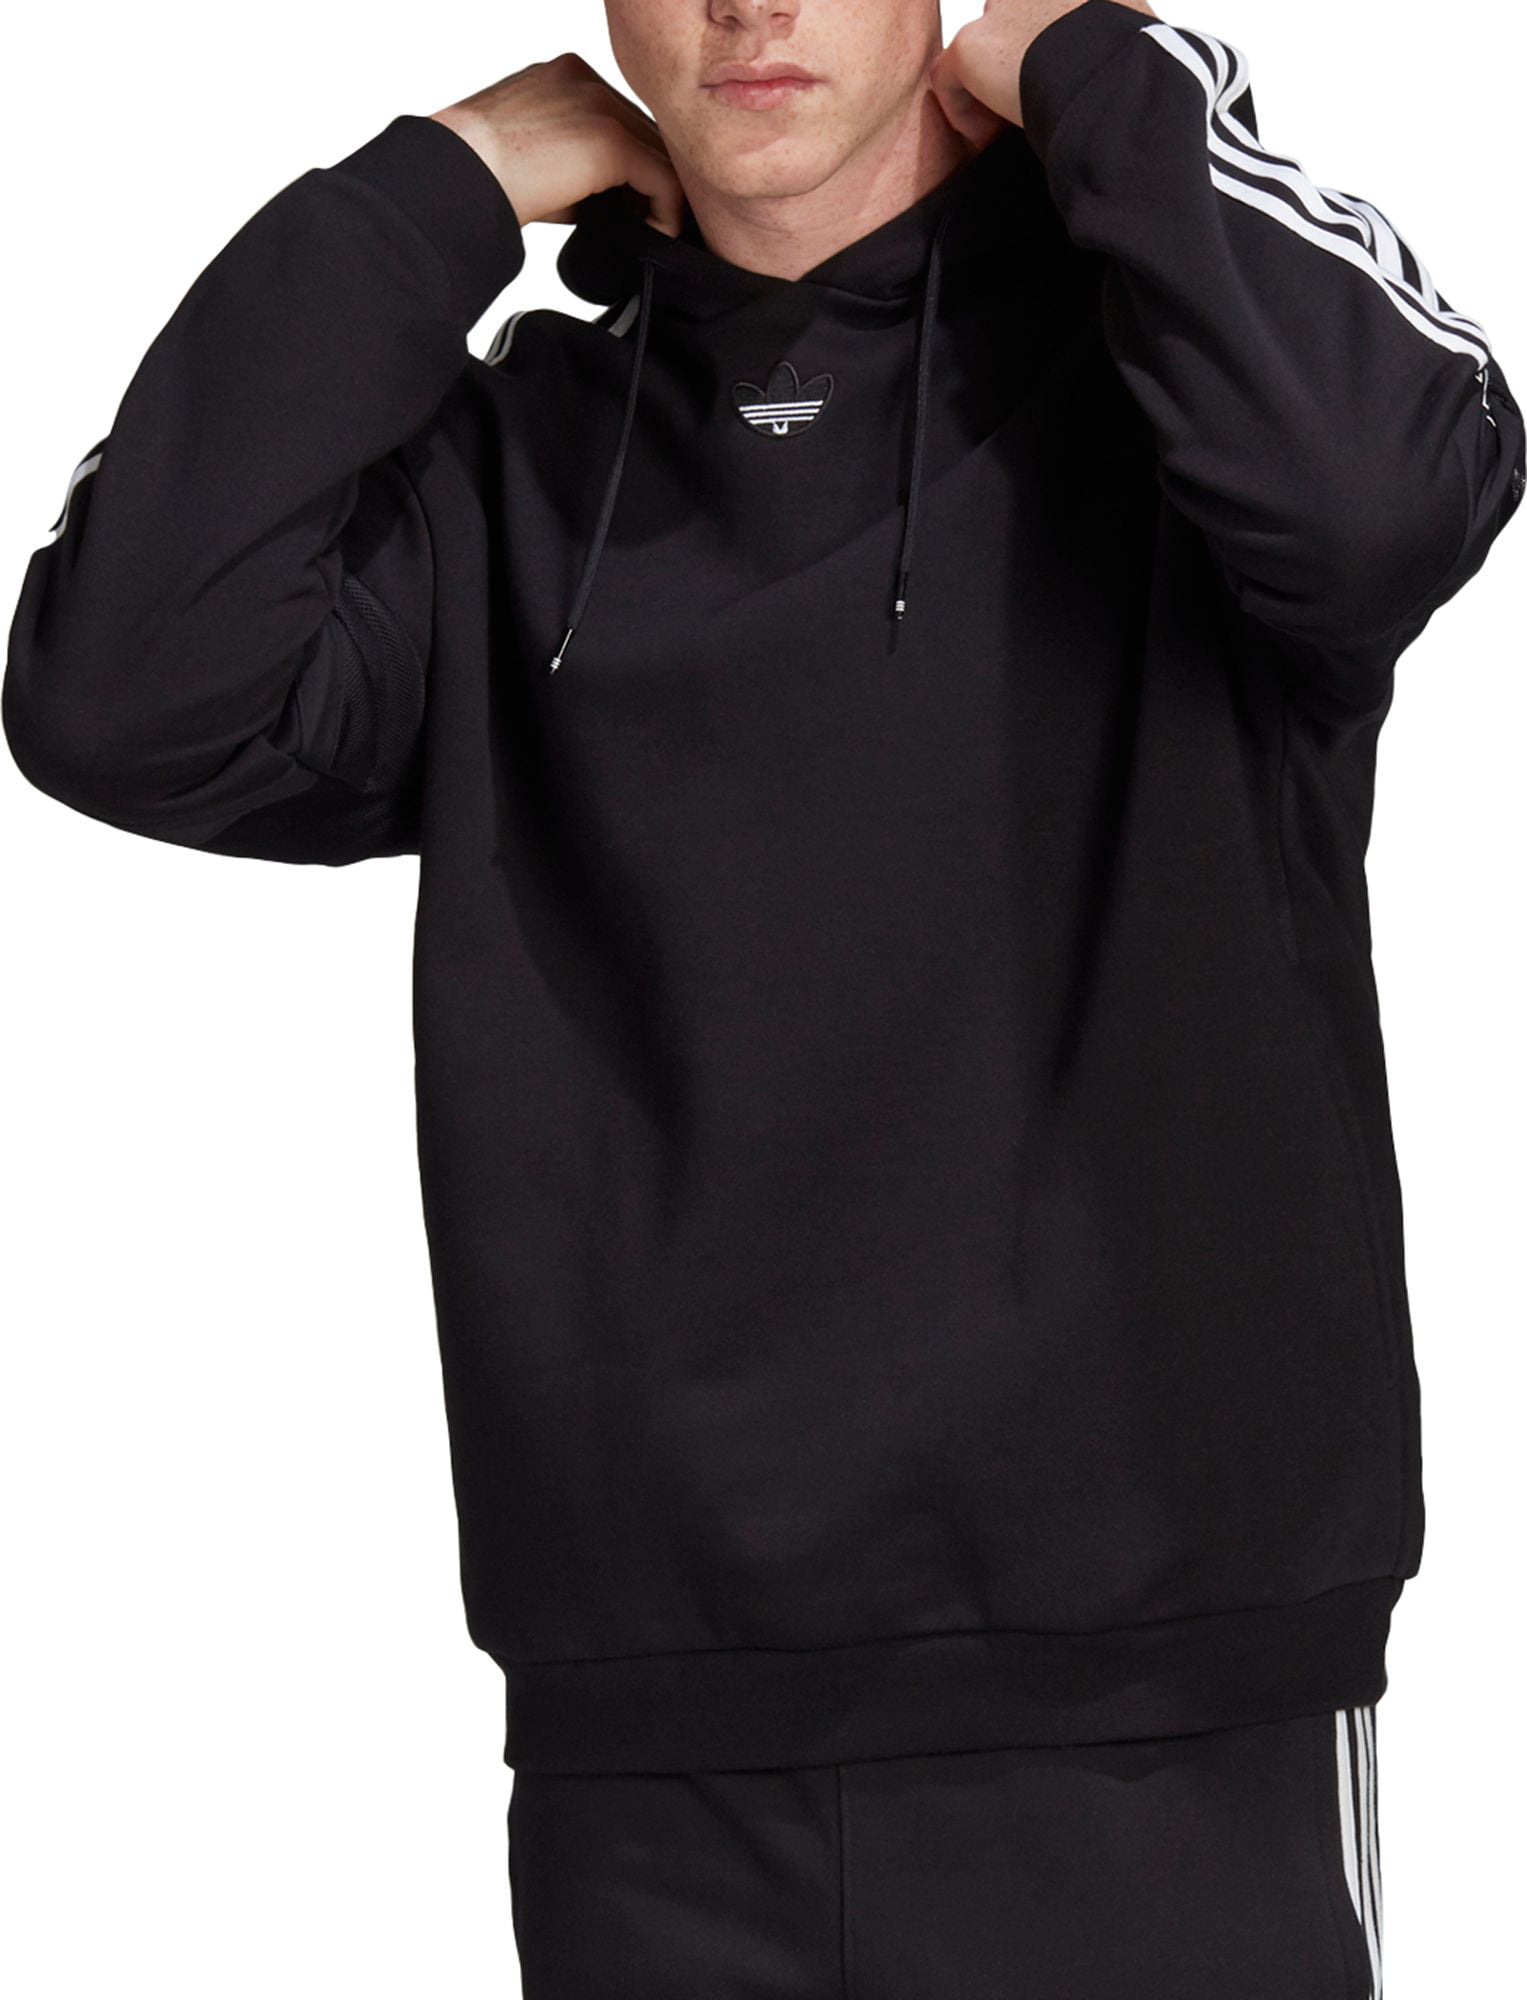 adidas originals men's team signature trefoil hoodie